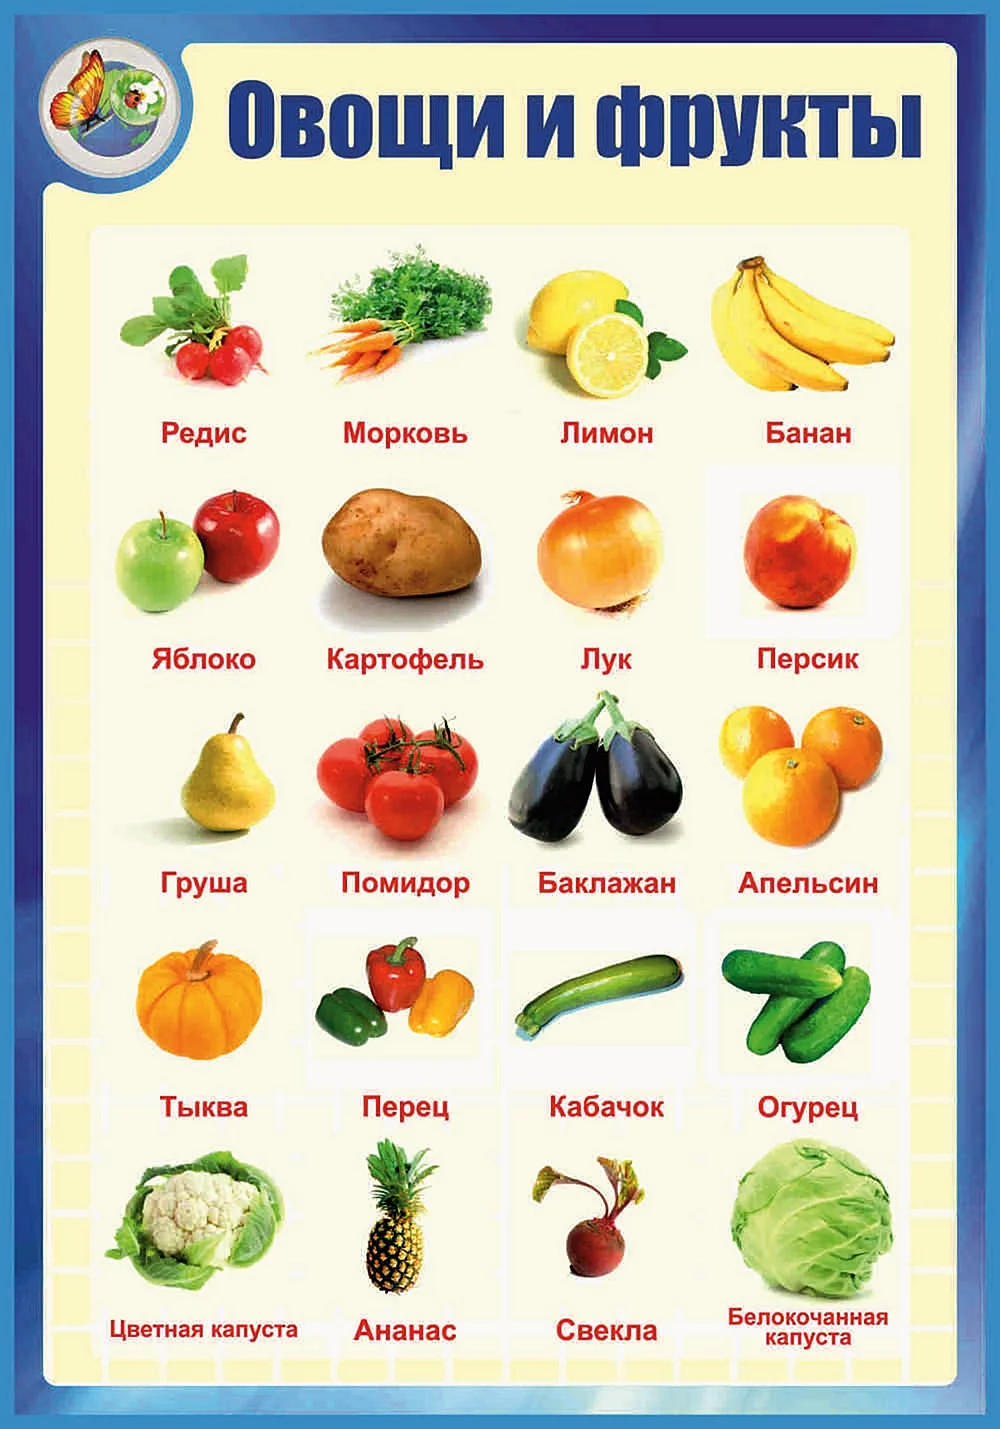 Список овощей и фруктов